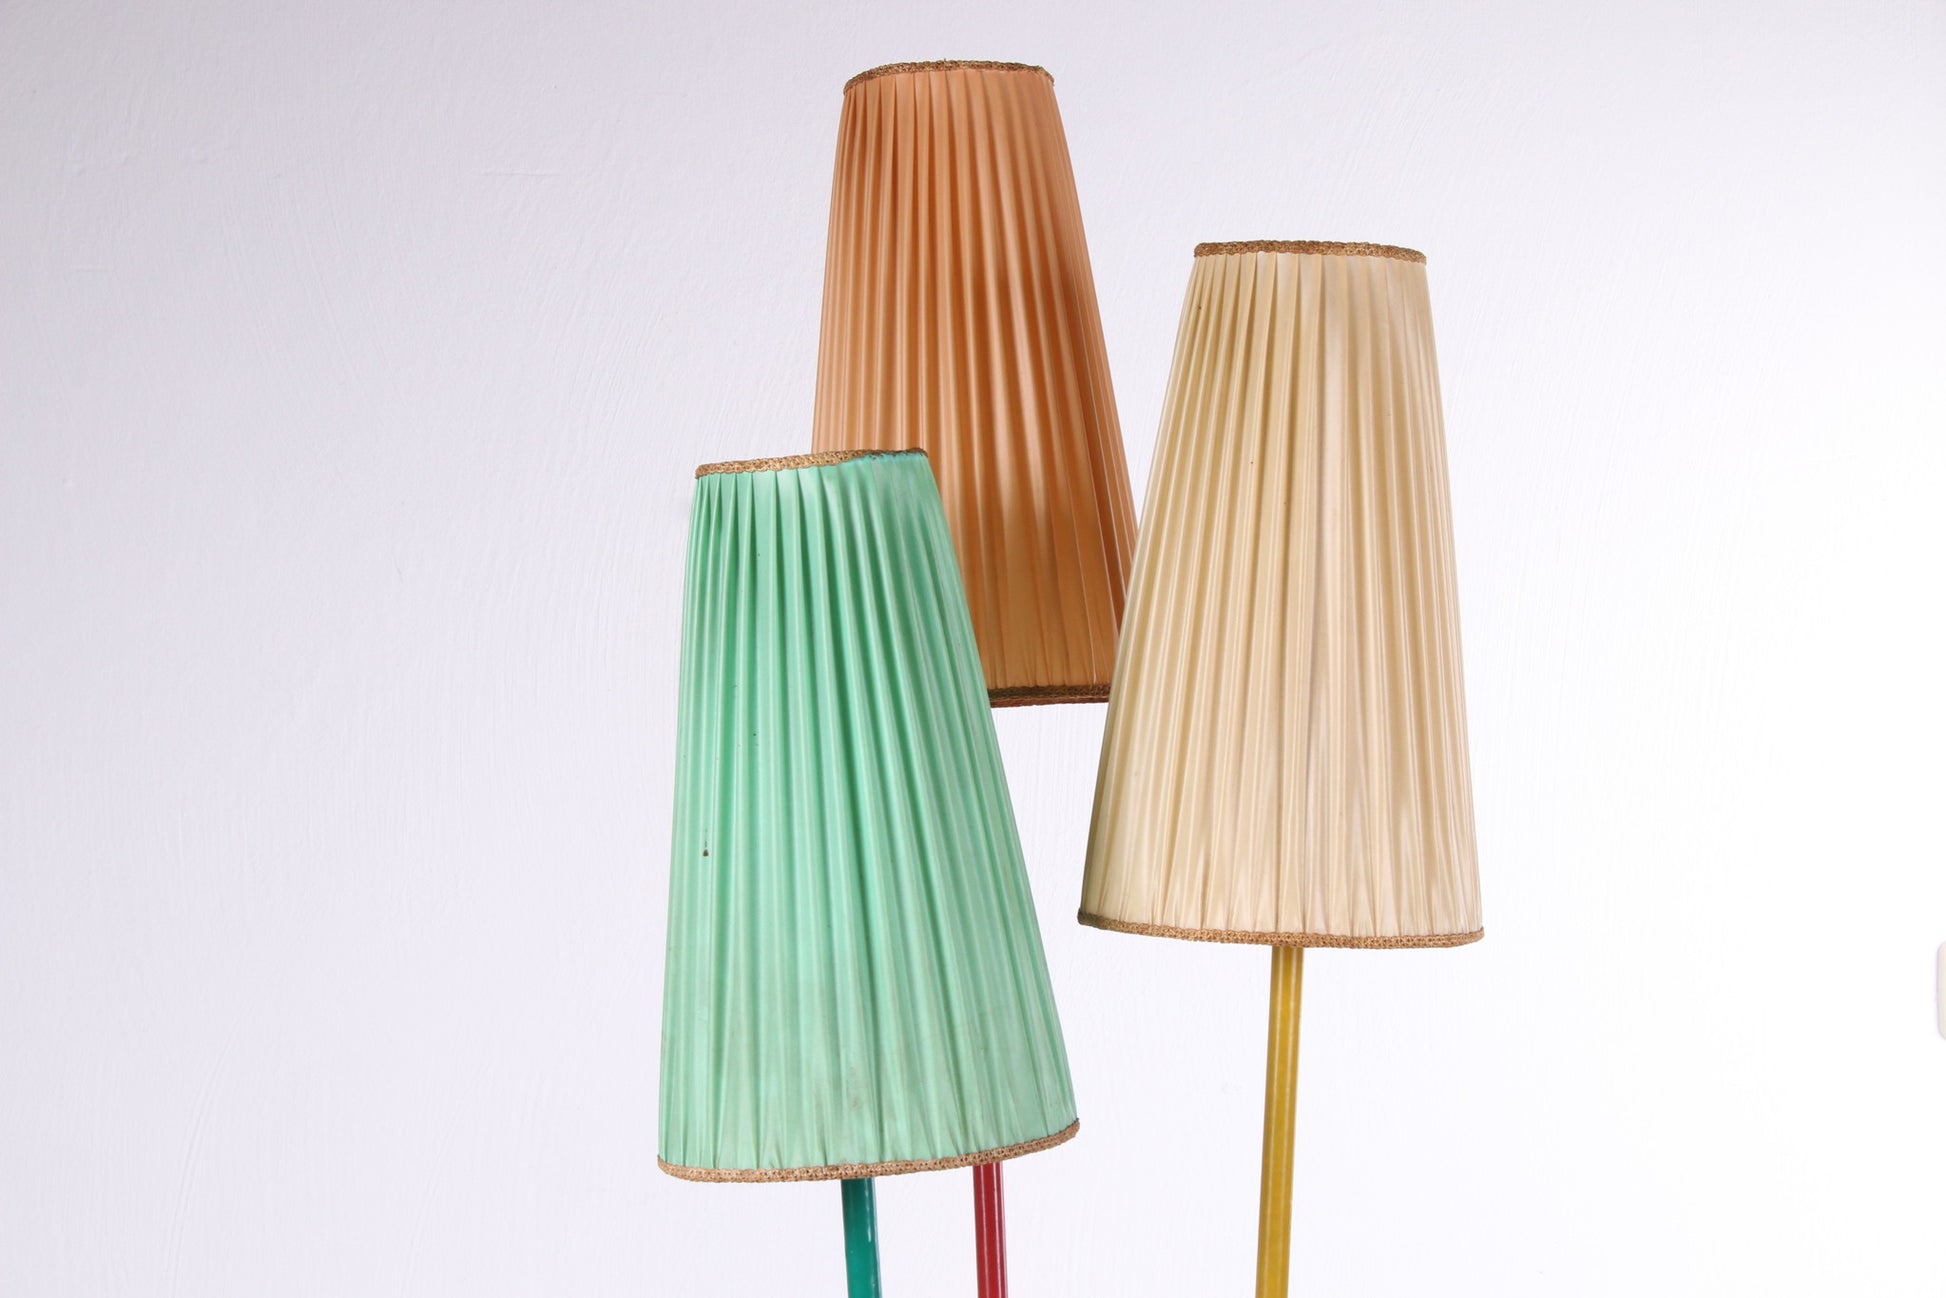 Vintage Driepoot Gekleurde Vloerlamp met Orginele stoffen kapjes 60's detail lampekappen